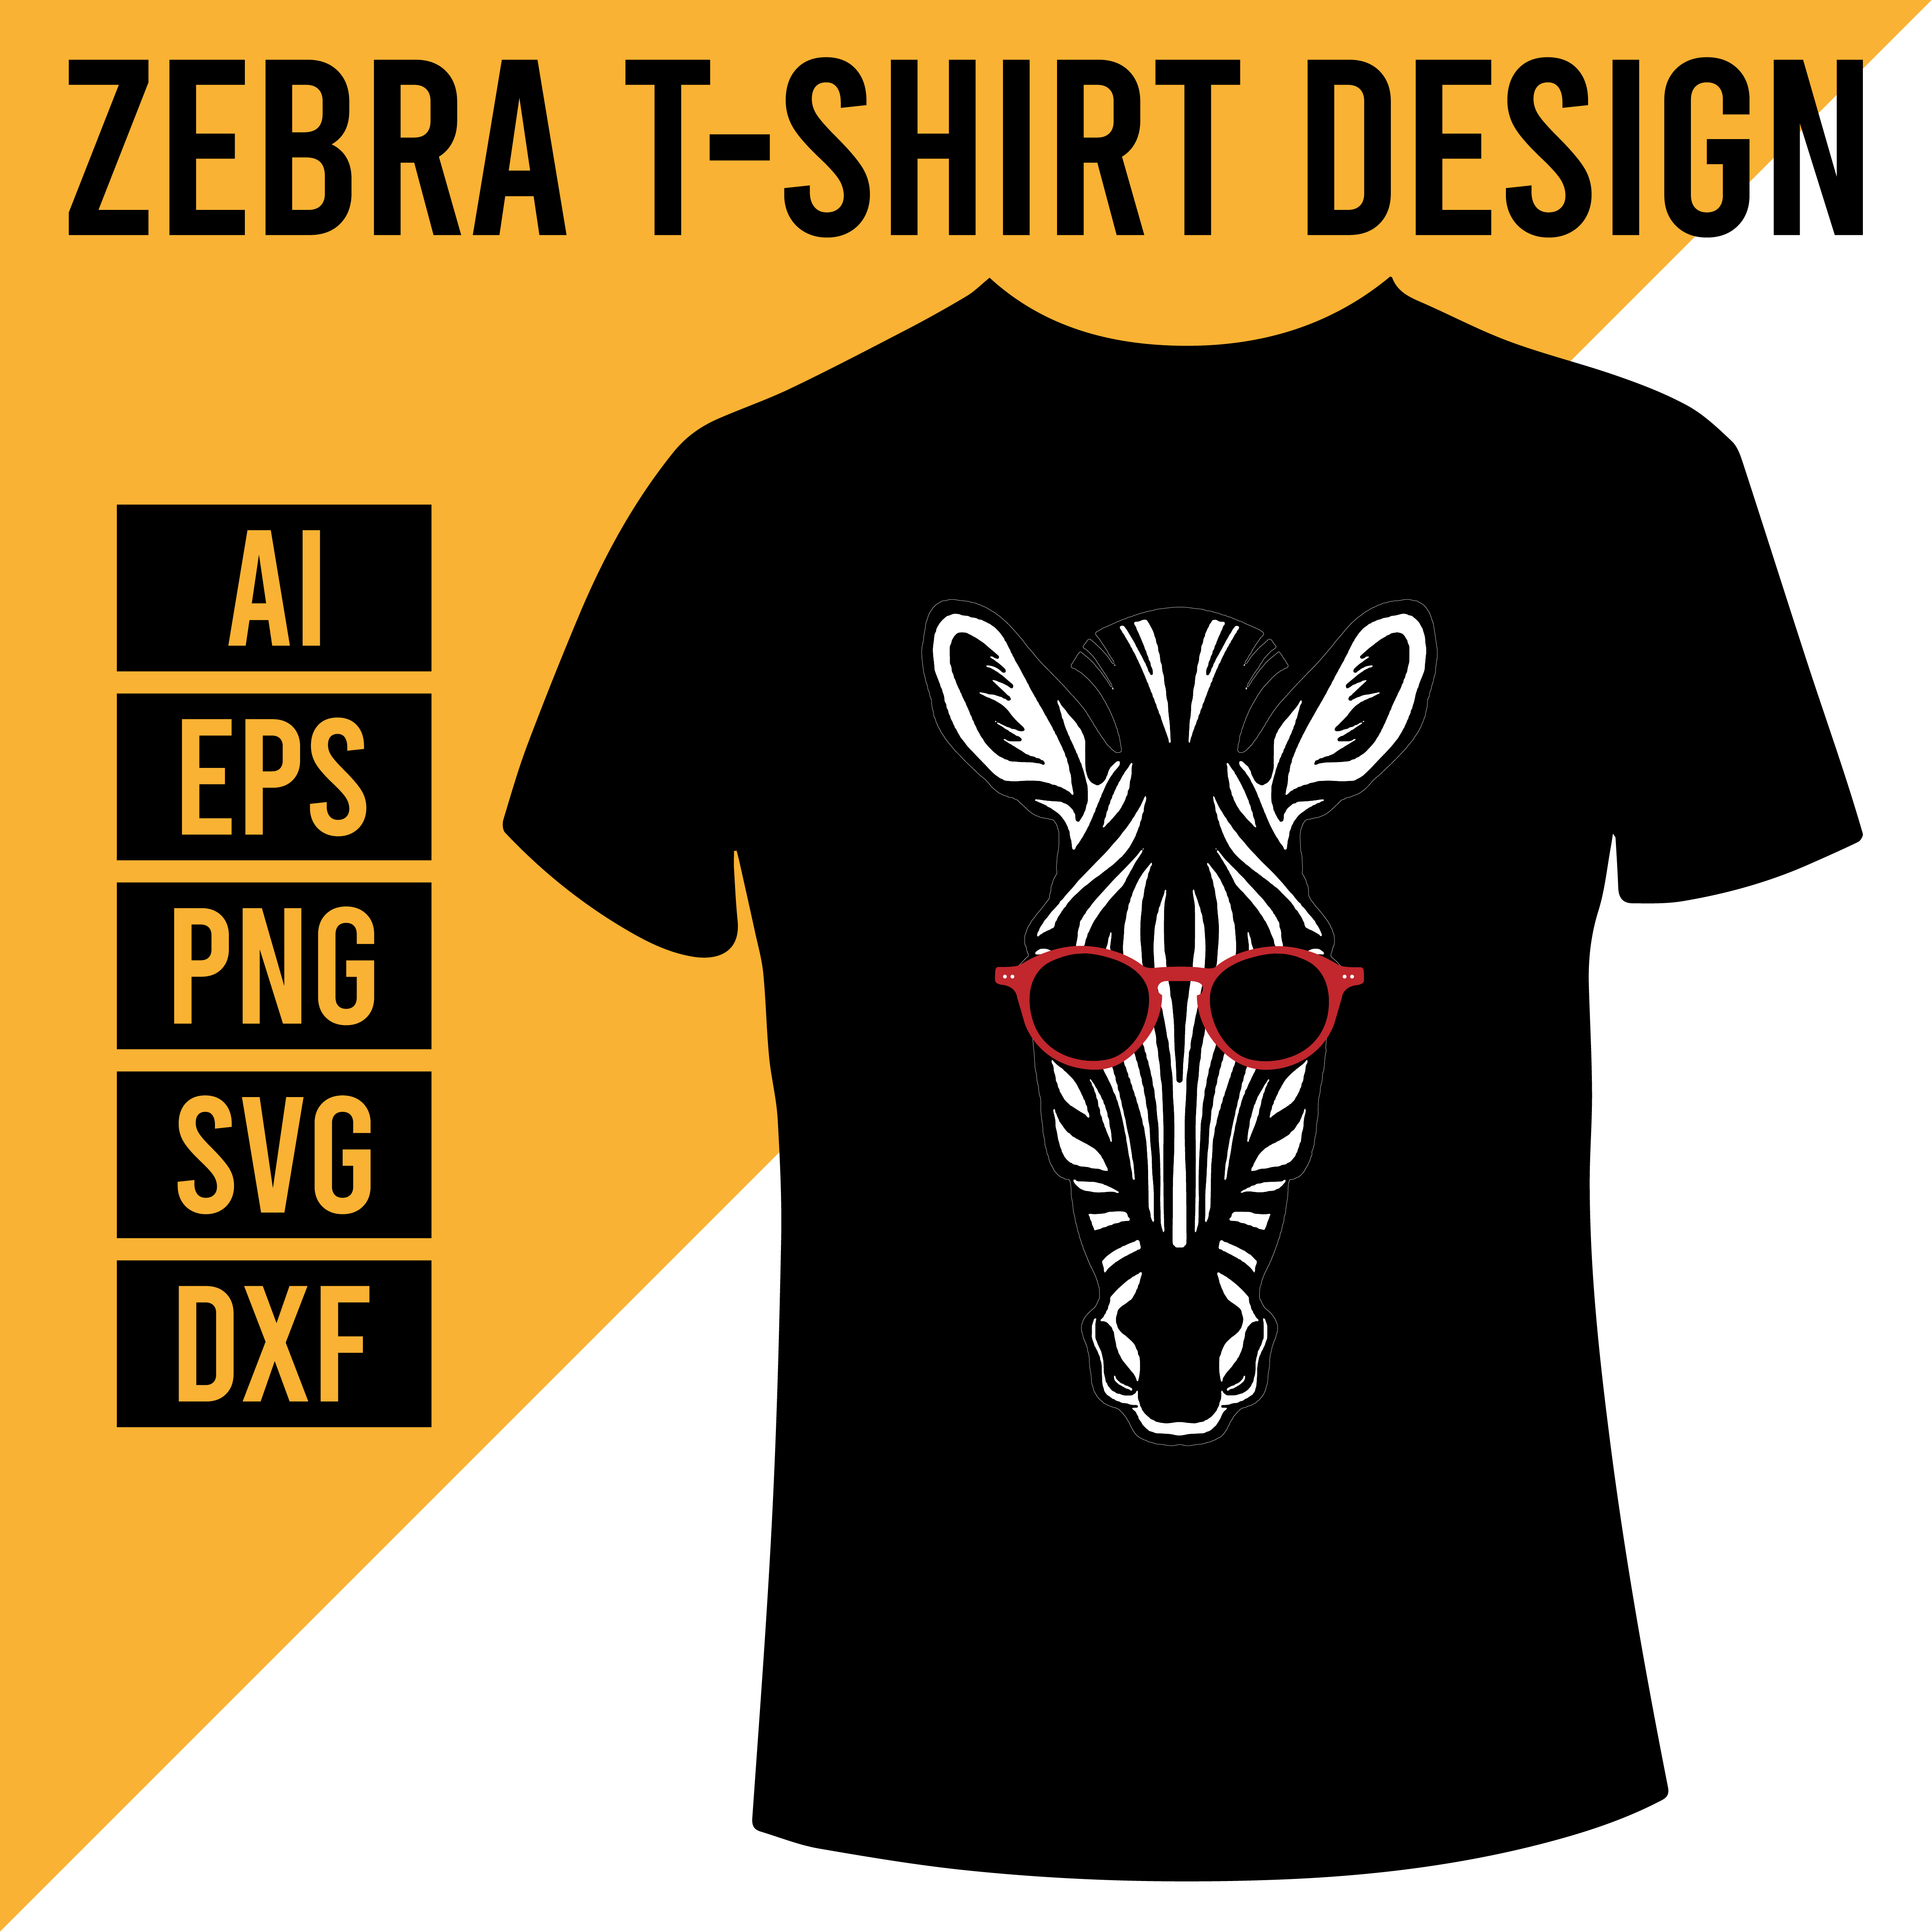 Zebra T-Shirt Design cover image.